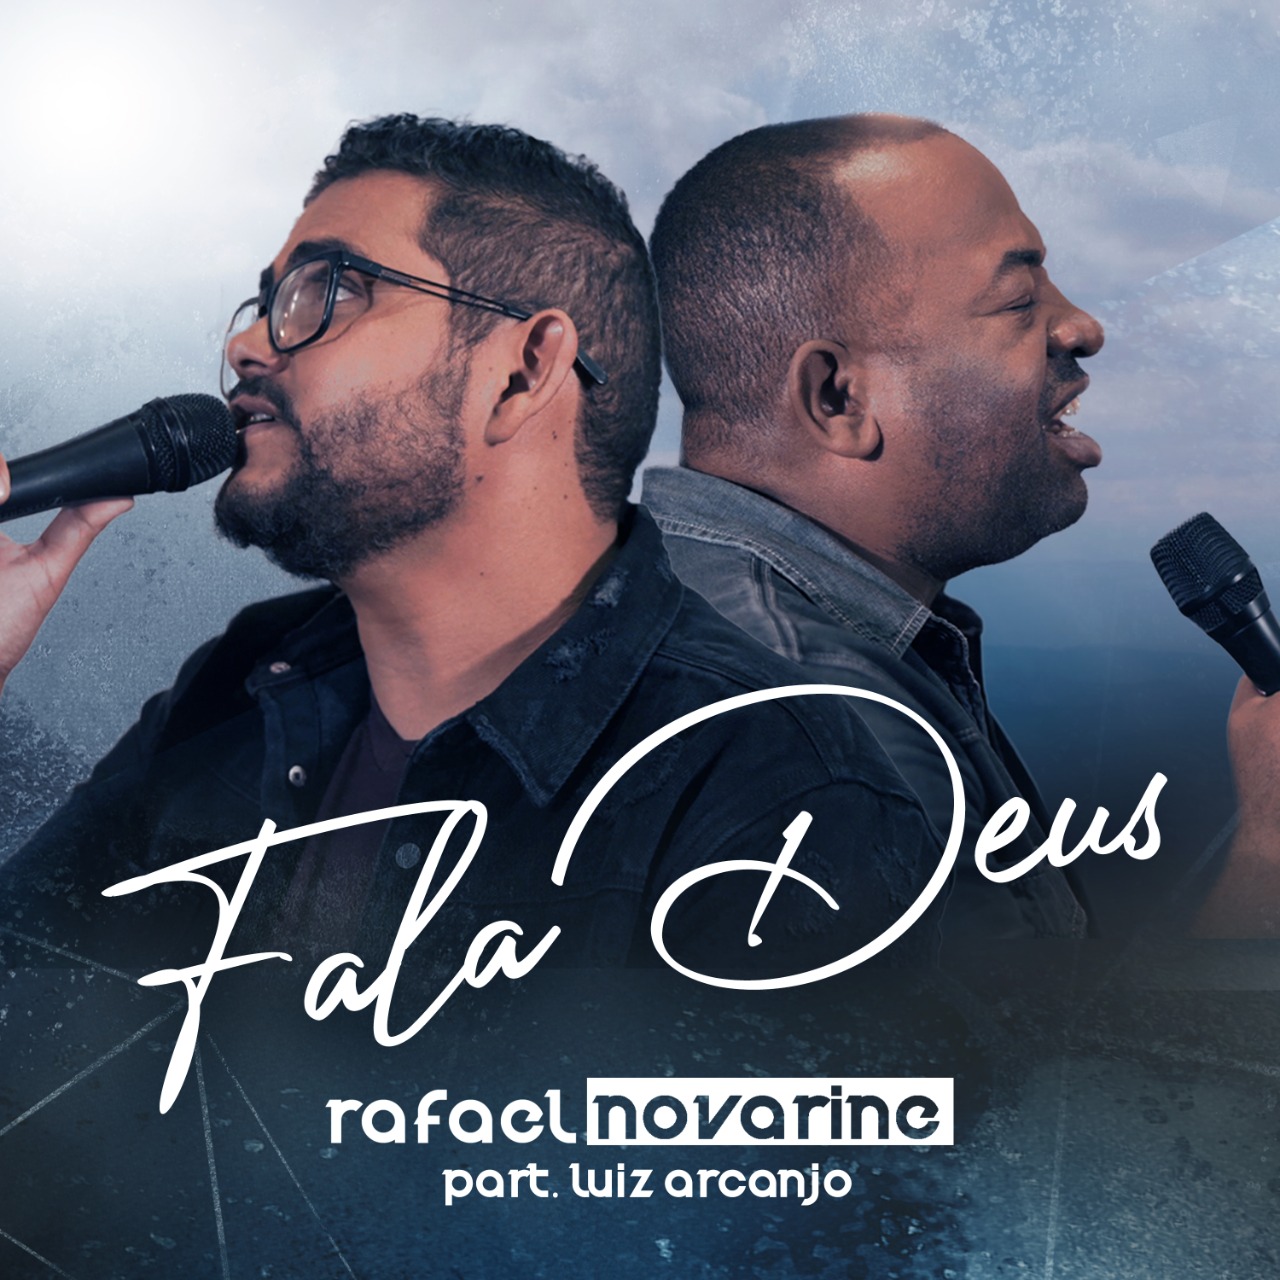 Rafael Novarine lança “Fala Deus” com a participação de Luiz Arcanjo